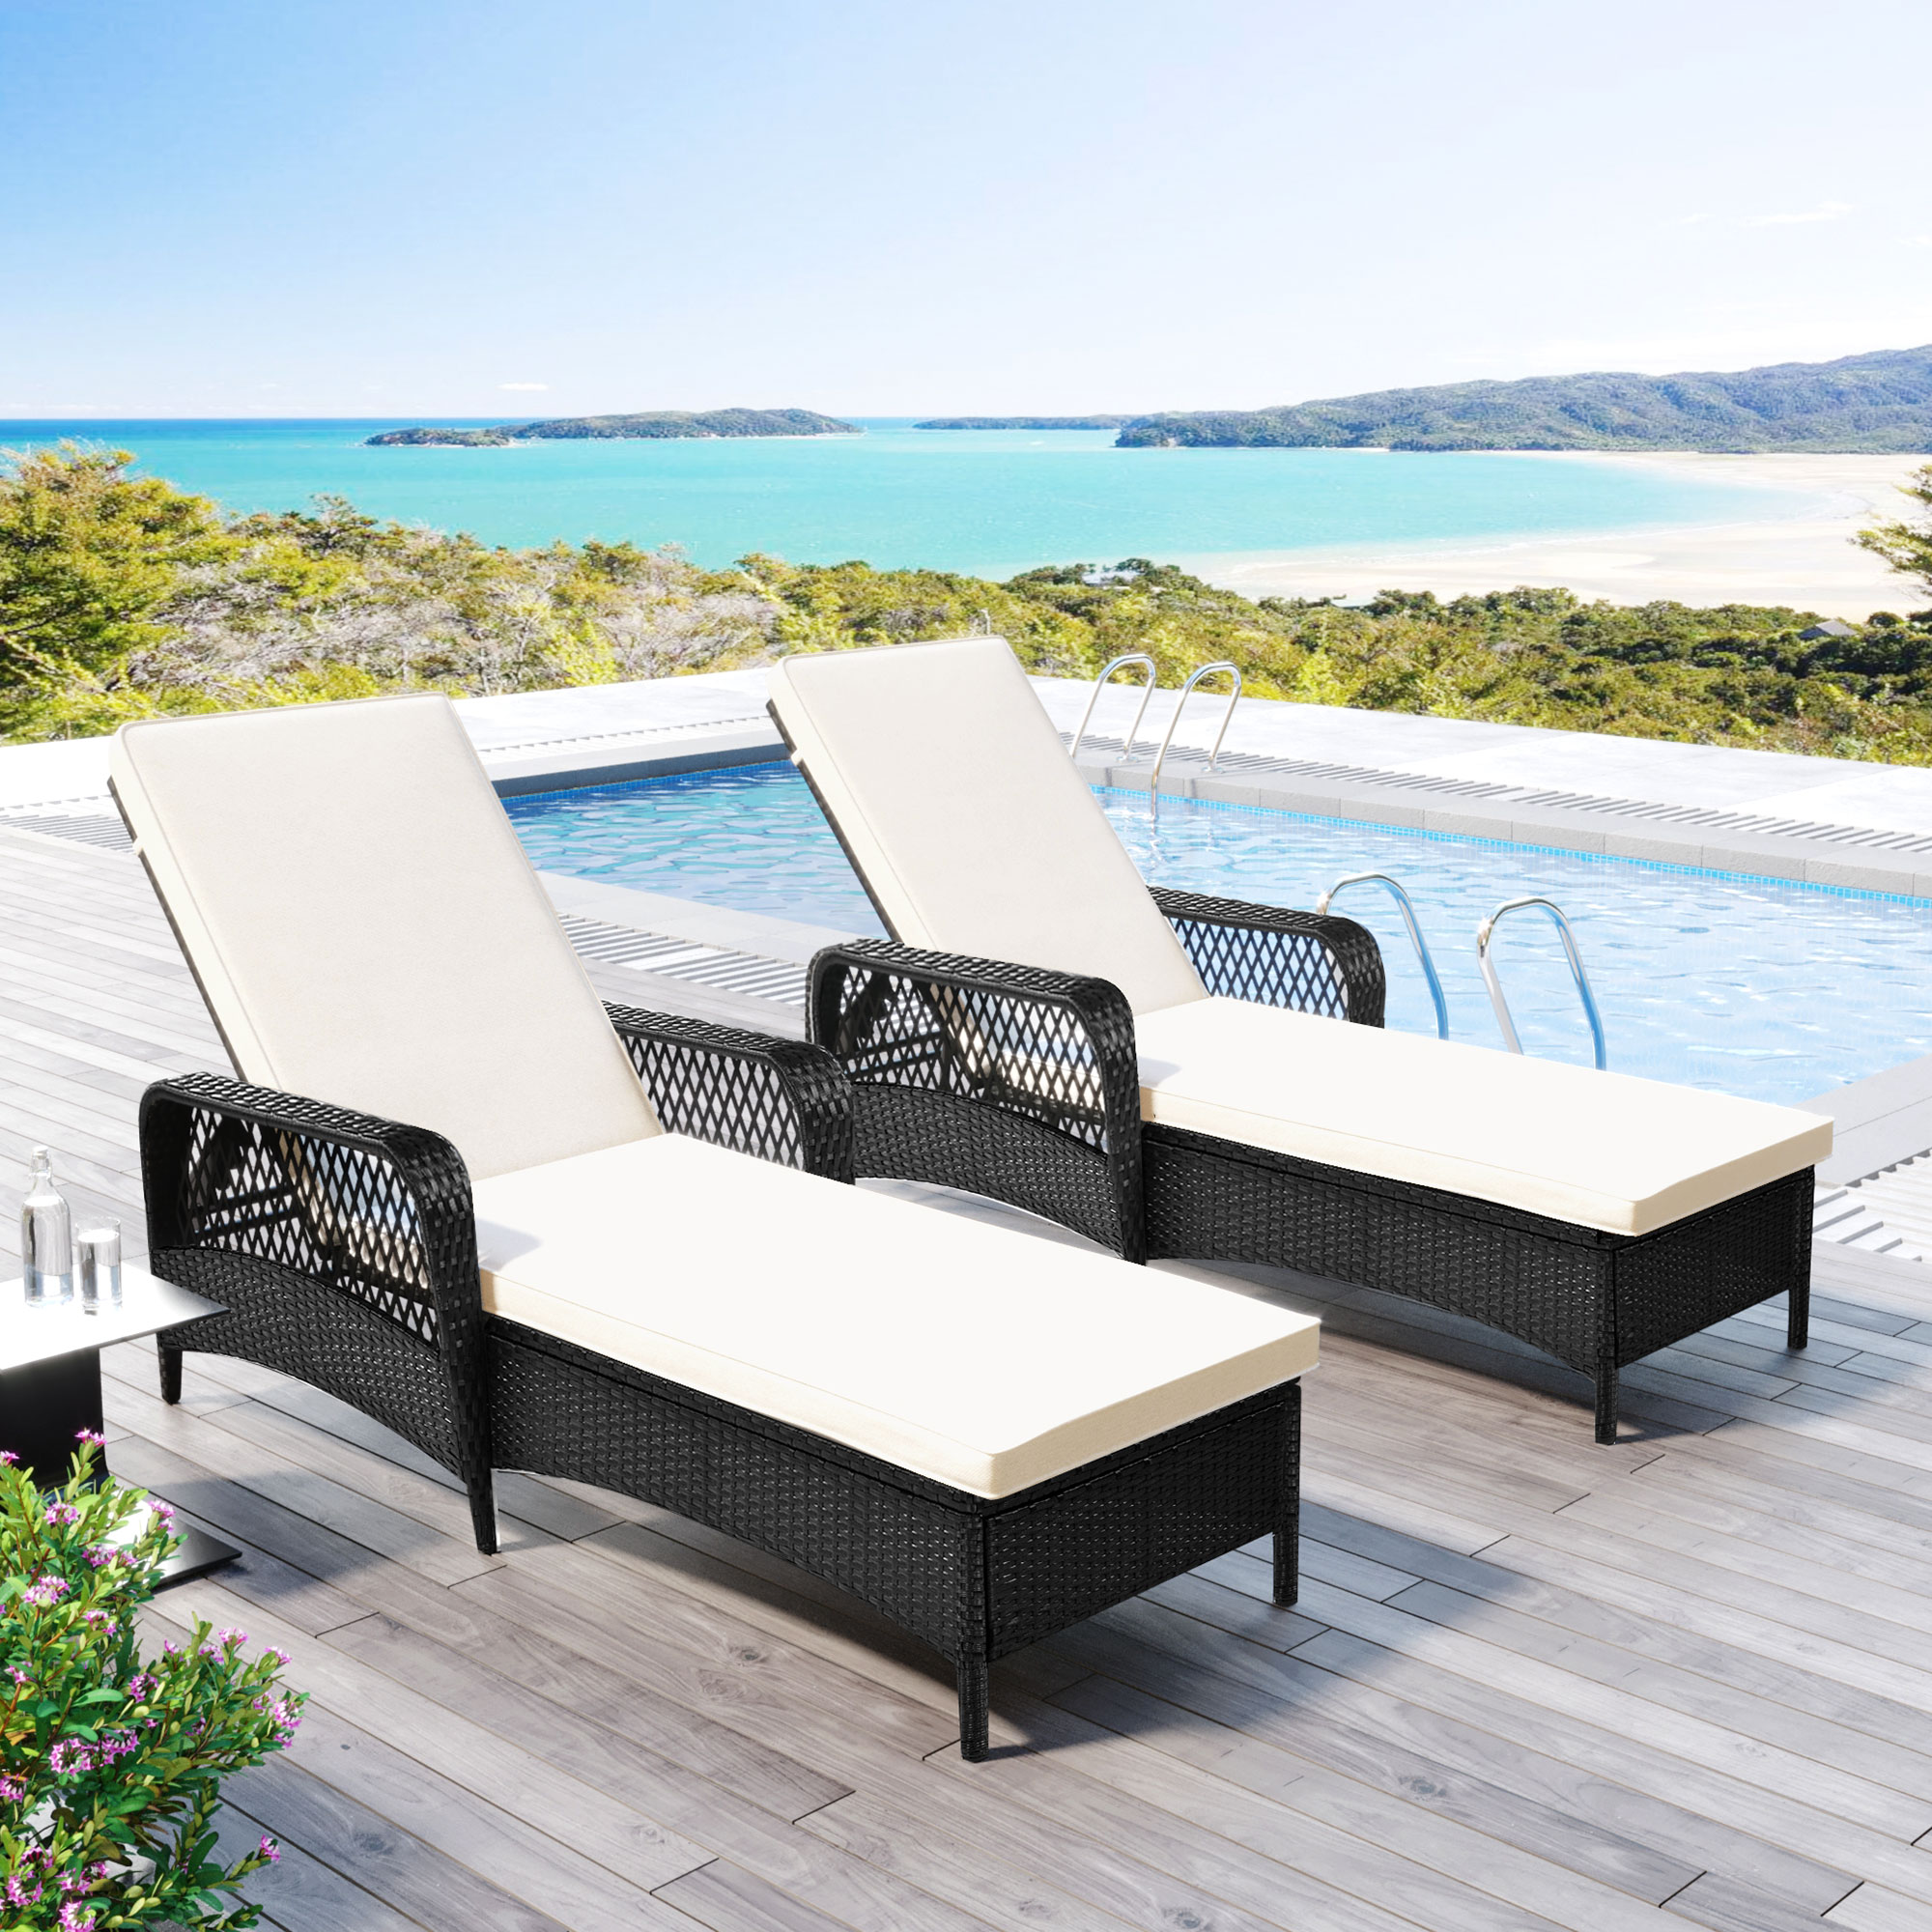 Outdoor patio pool PE rattan wicker chair wicker sun lounger, Adjustable backrest, beige cushion, Black wiker (2 sets)-Boyel Living